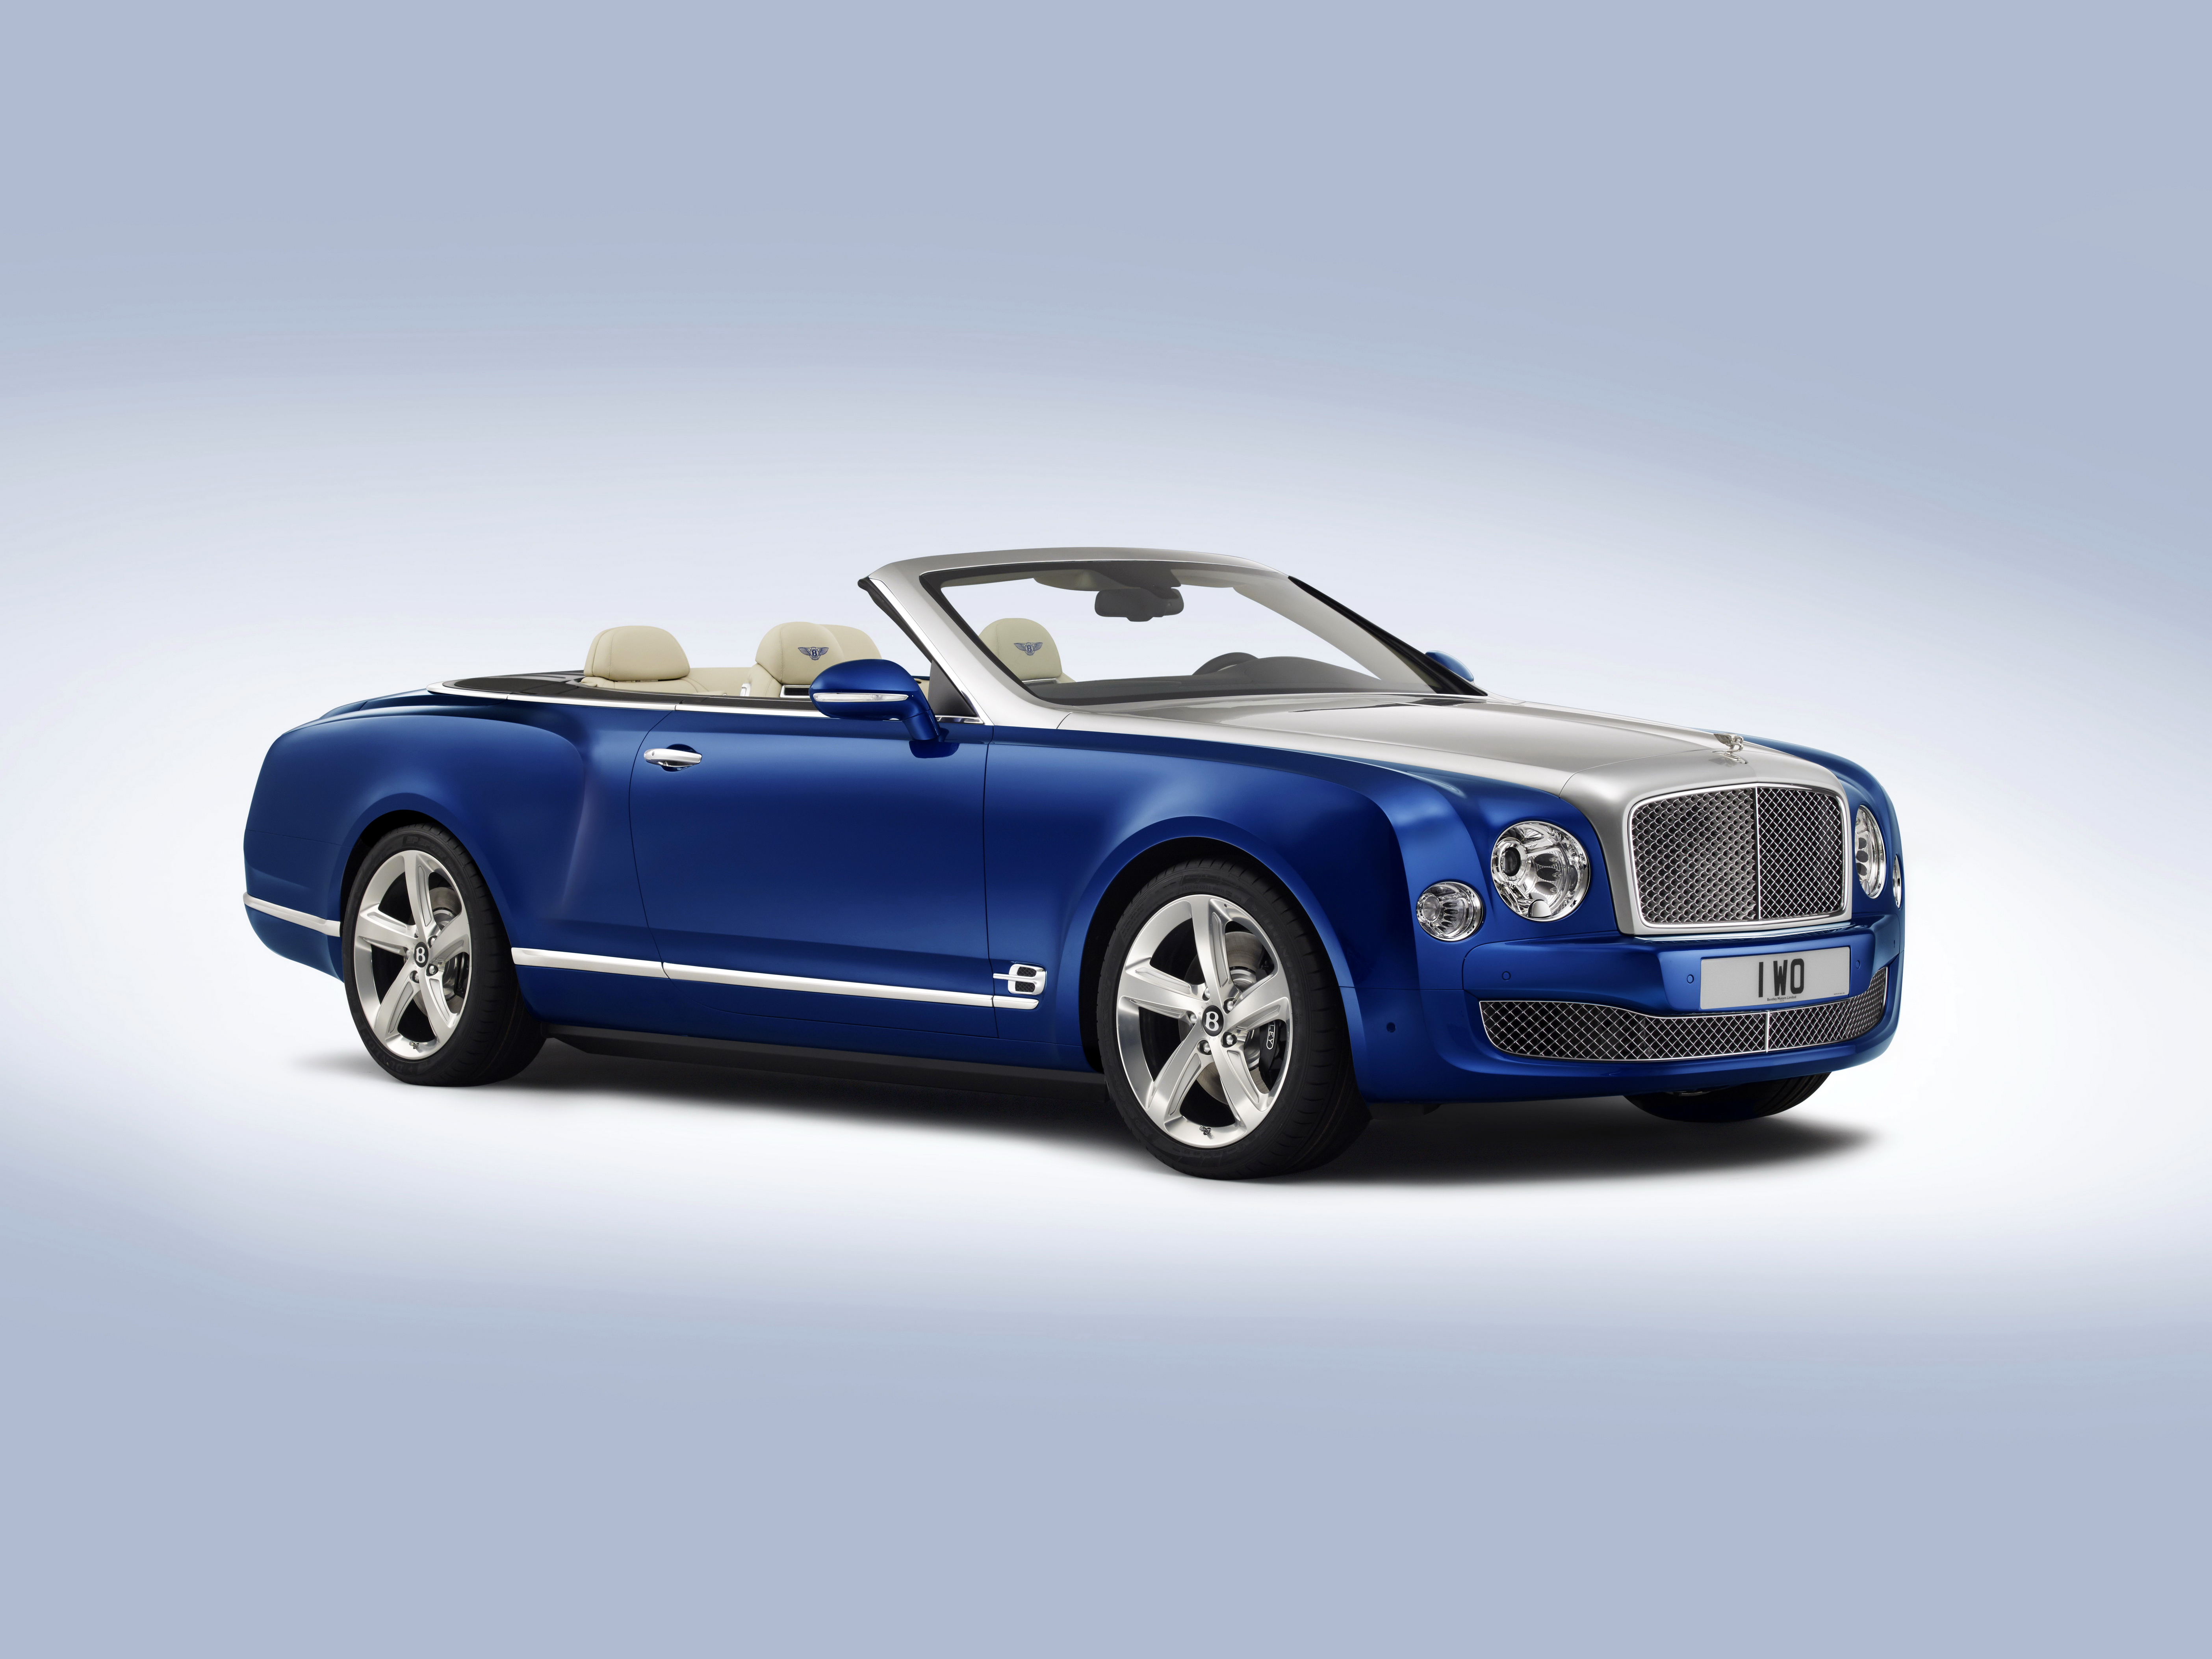 Картинки Bentley 2014 Grand Convertible дорогая Кабриолет Синий Автомобили 5616x4212 Бентли дорогие дорогой люксовые Роскошные роскошный роскошная кабриолета синяя синие синих авто машины машина автомобиль